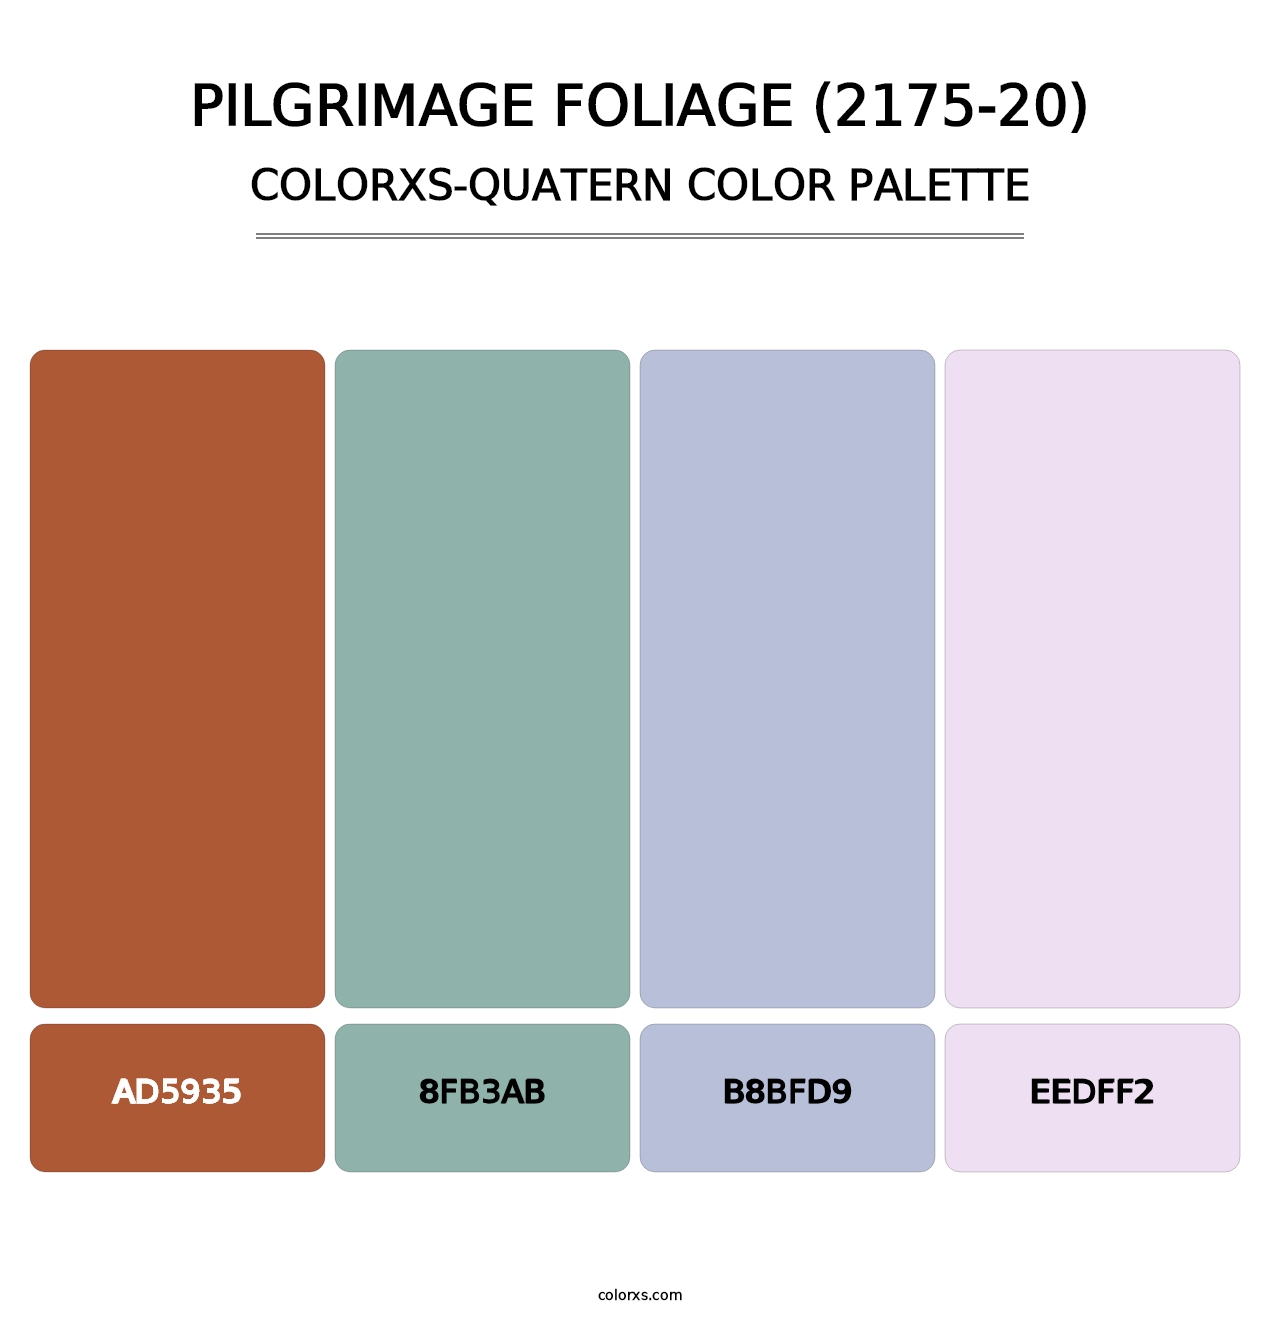 Pilgrimage Foliage (2175-20) - Colorxs Quatern Palette